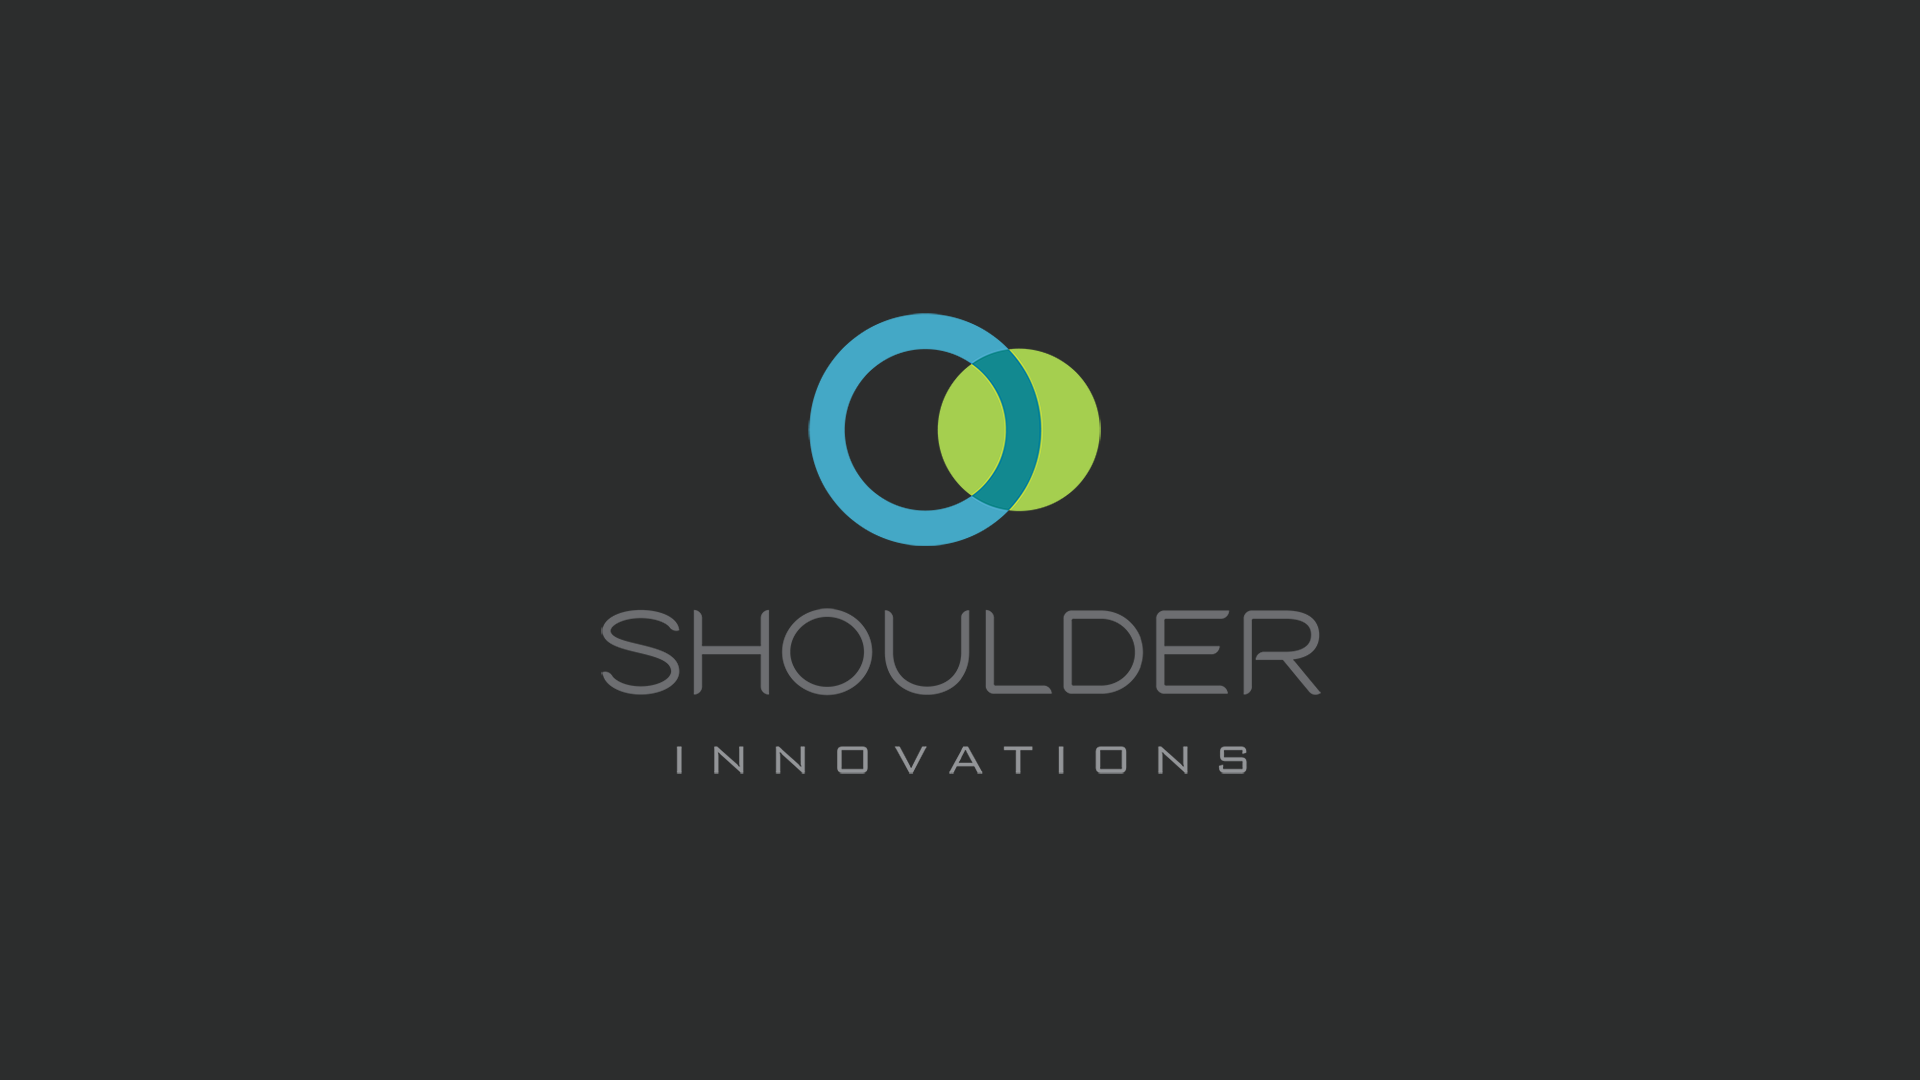 Shoulder Innovations Video Poster Image